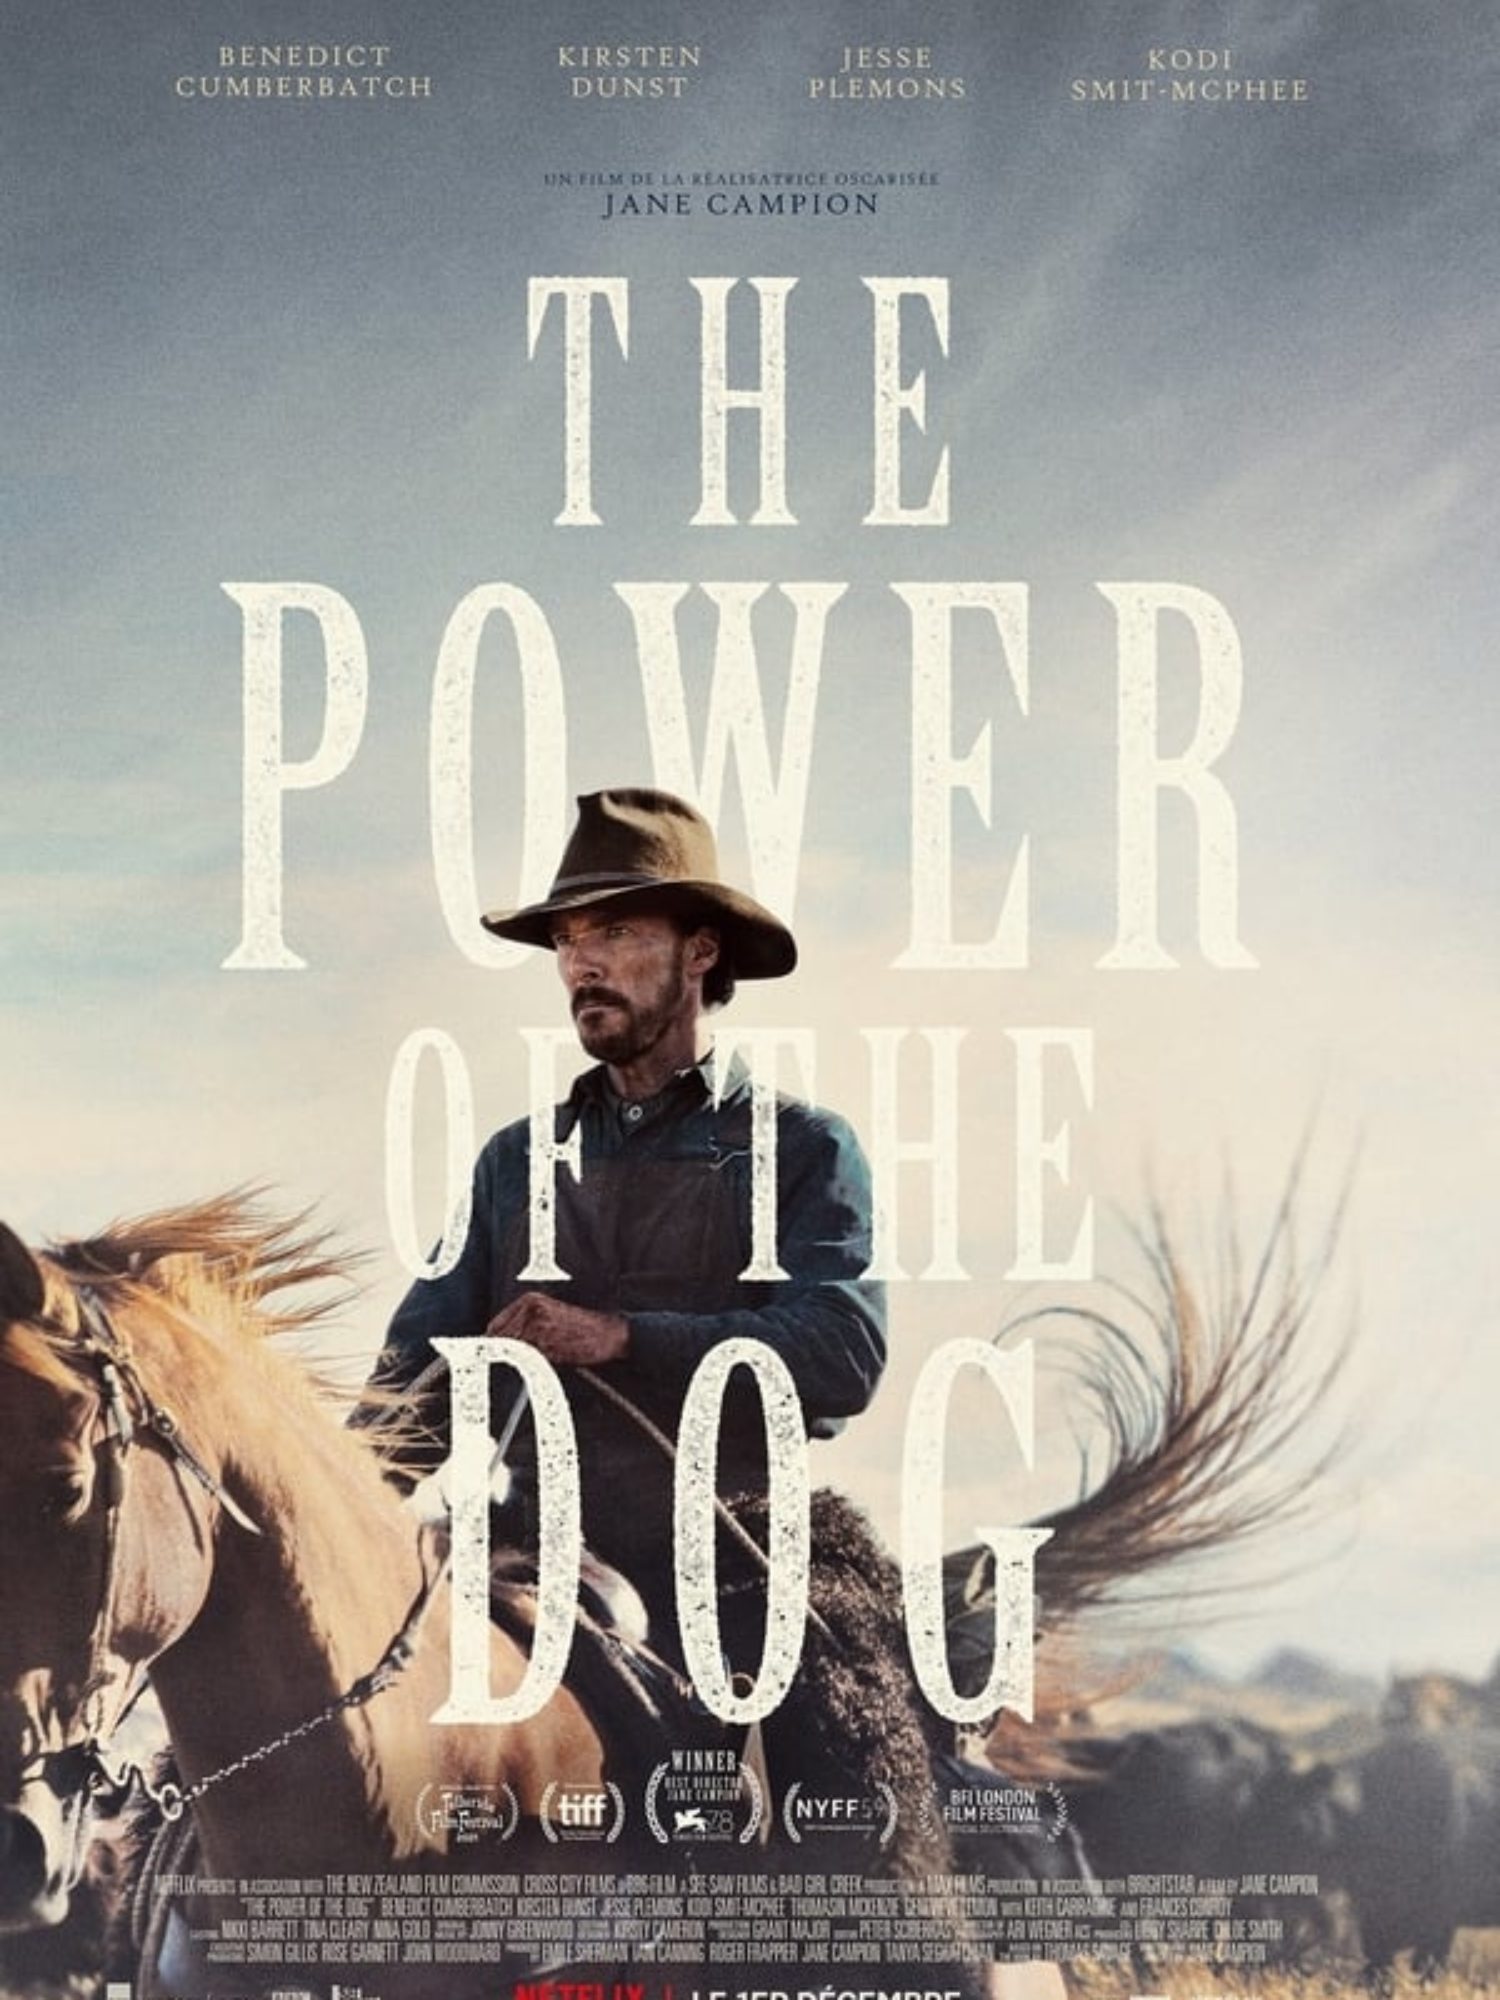 Le Podcast des Réfracteurs: The Power of the Dog